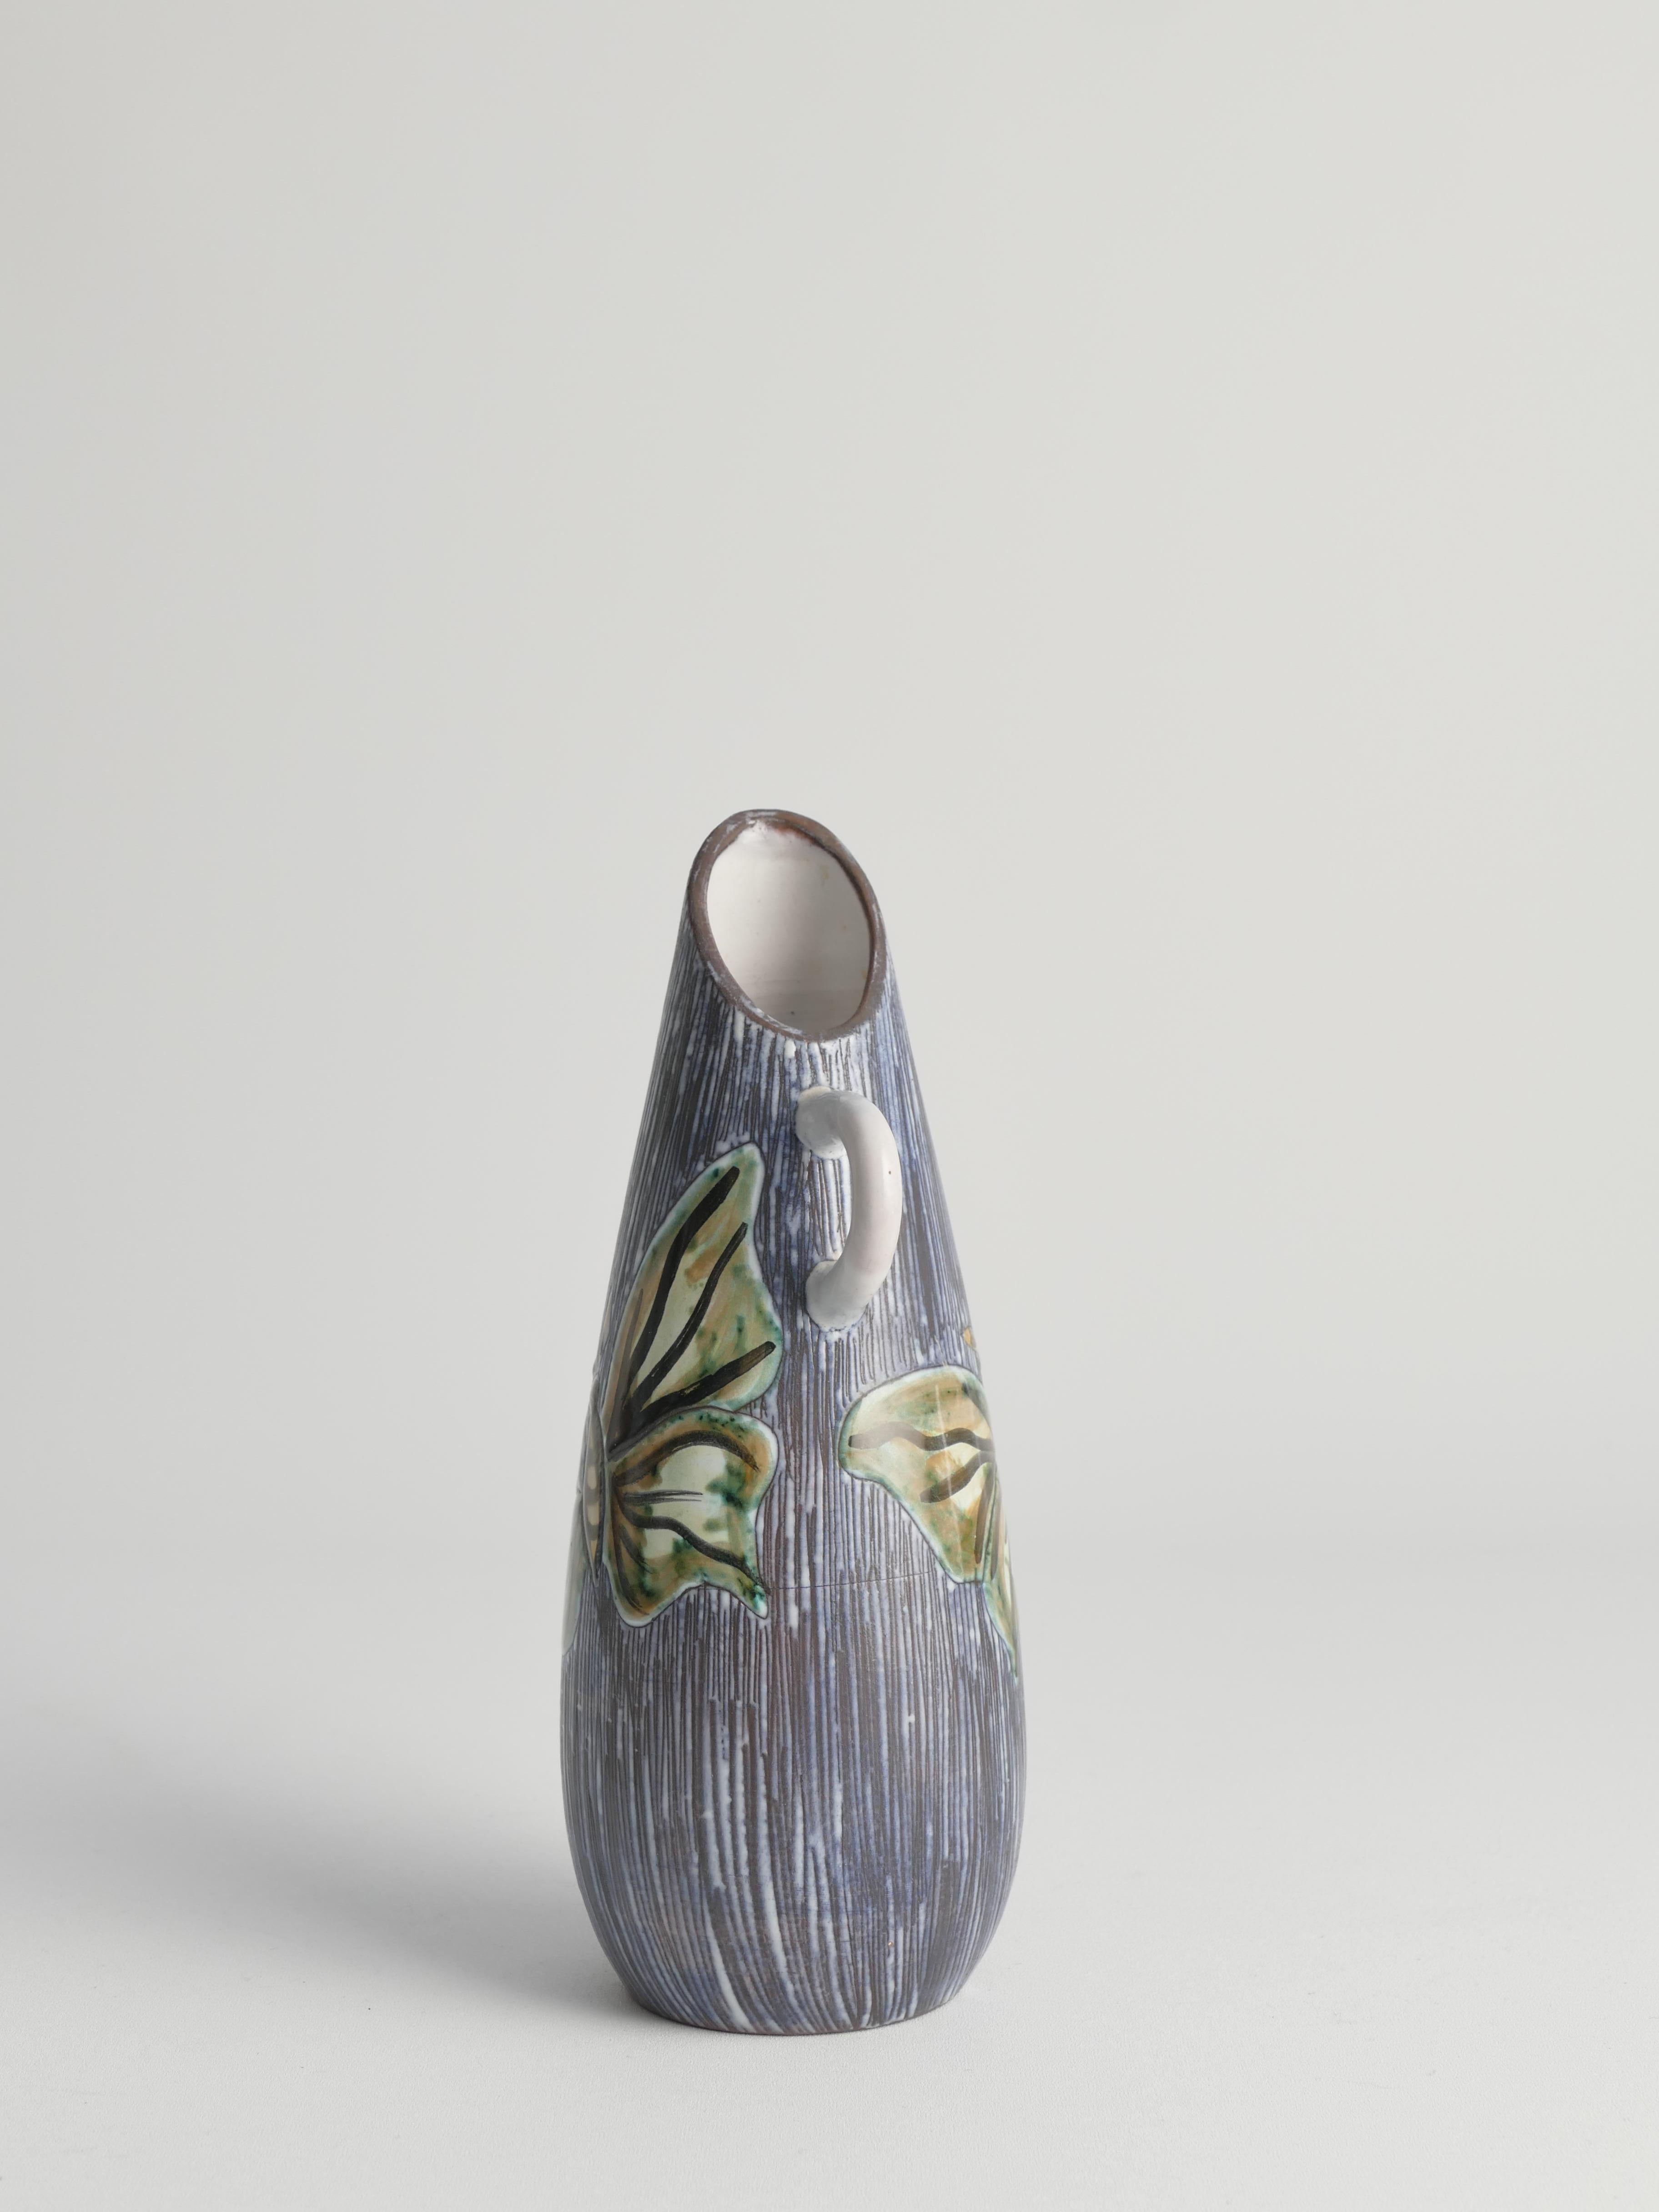 Handgeformte Vase aus Steingut mit Sgraffito-Technik und Schmetterlingen, Schweden 1950er Jahre 

Diese in den 1950er Jahren handgefertigte und handdekorierte Vase aus Steinzeug stammt wahrscheinlich aus Alingsås, Schweden. Die Vase hat einen